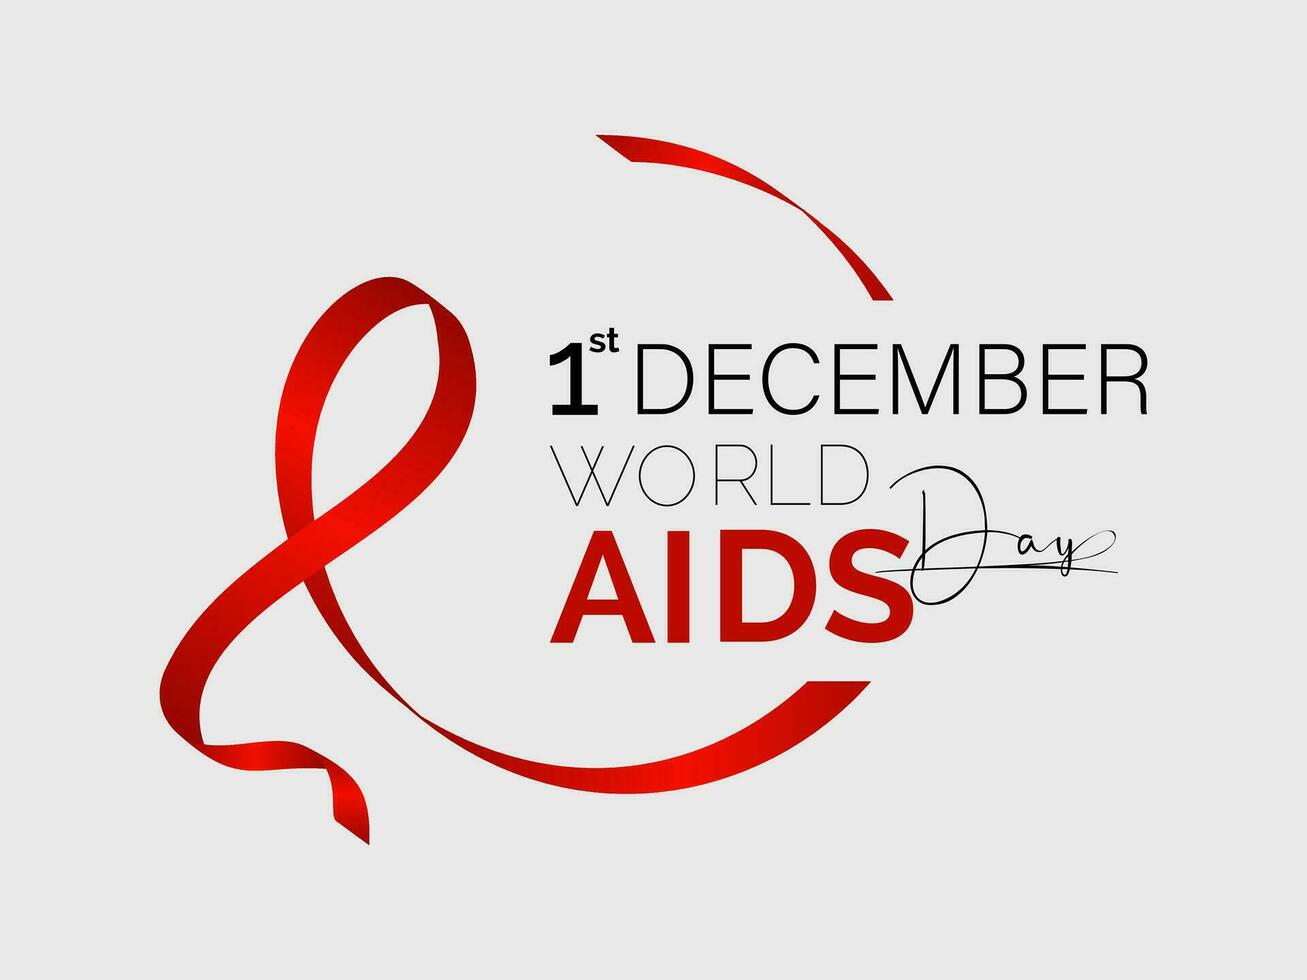 wereld AIDS dag bewustzijn achtergrond rood banier lint en globaal ondersteuning vector illustratie. achtergrond, banier, kaart, poster ontwerp.